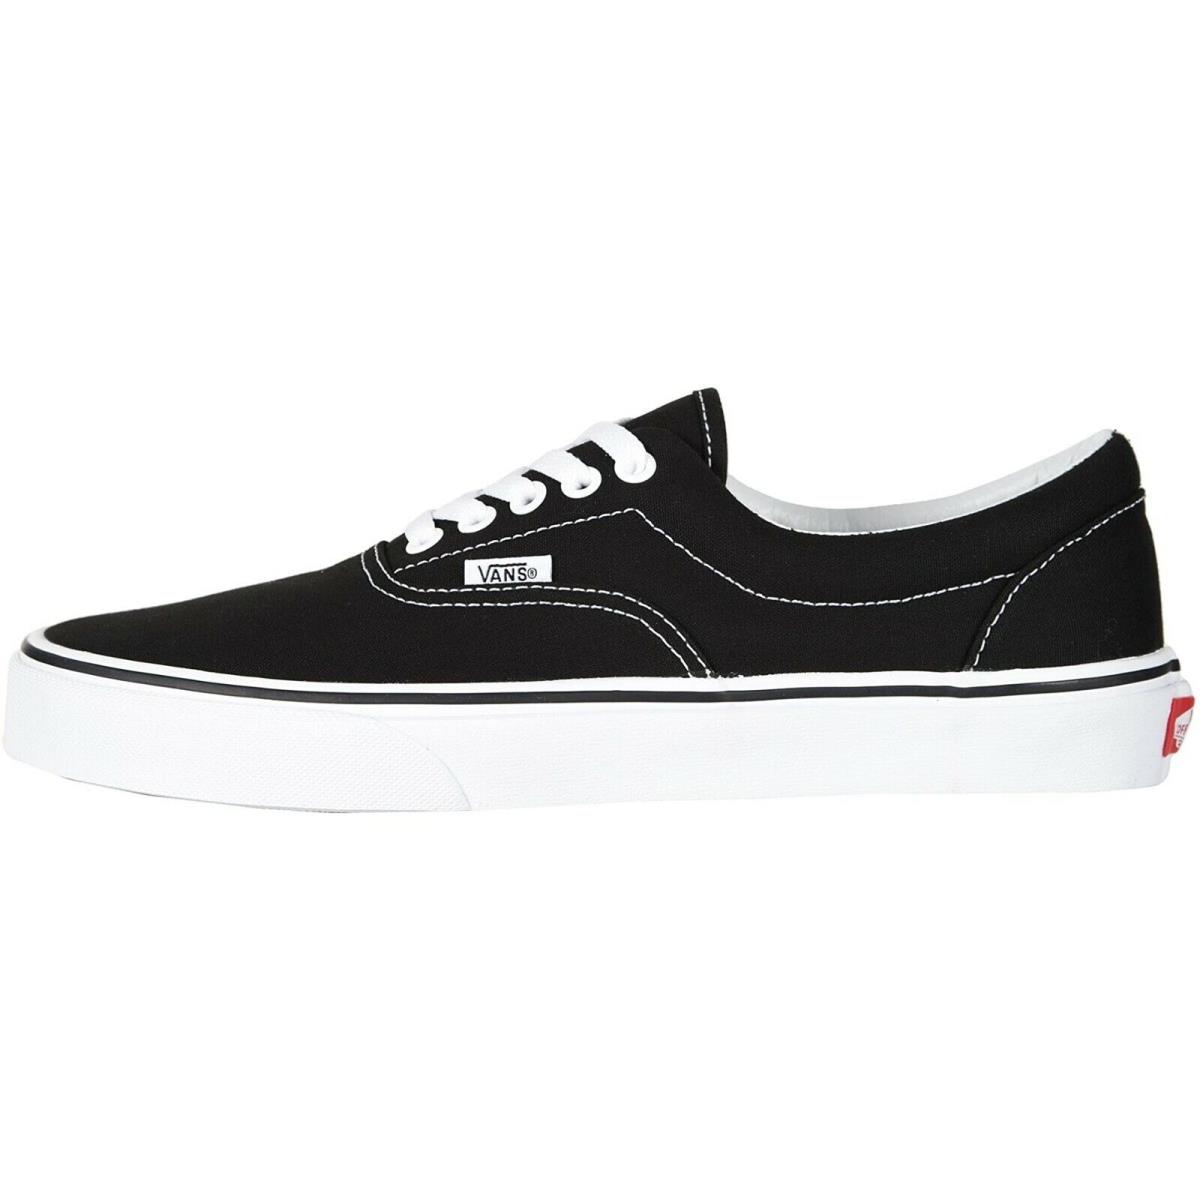 Vans Era Sneakers Black White Unisex Men Skate Shoes - Black White